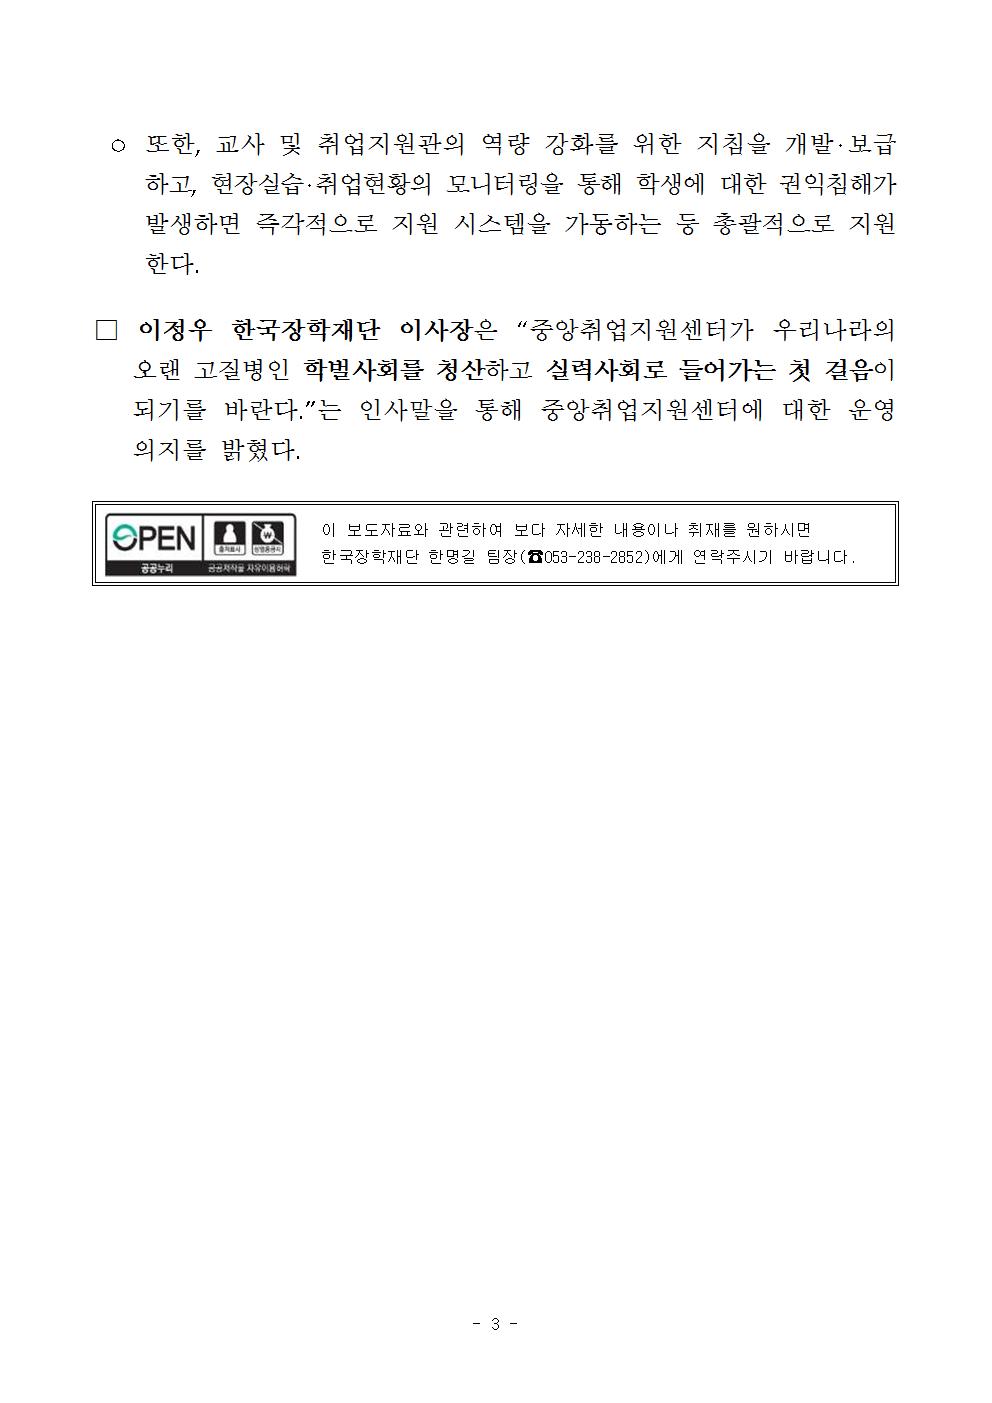 06-30(화)[보도자료] 한국장학재단 고졸인재 취업 지원을 위한 중앙취업지원센터 개소식 개최003.jpg